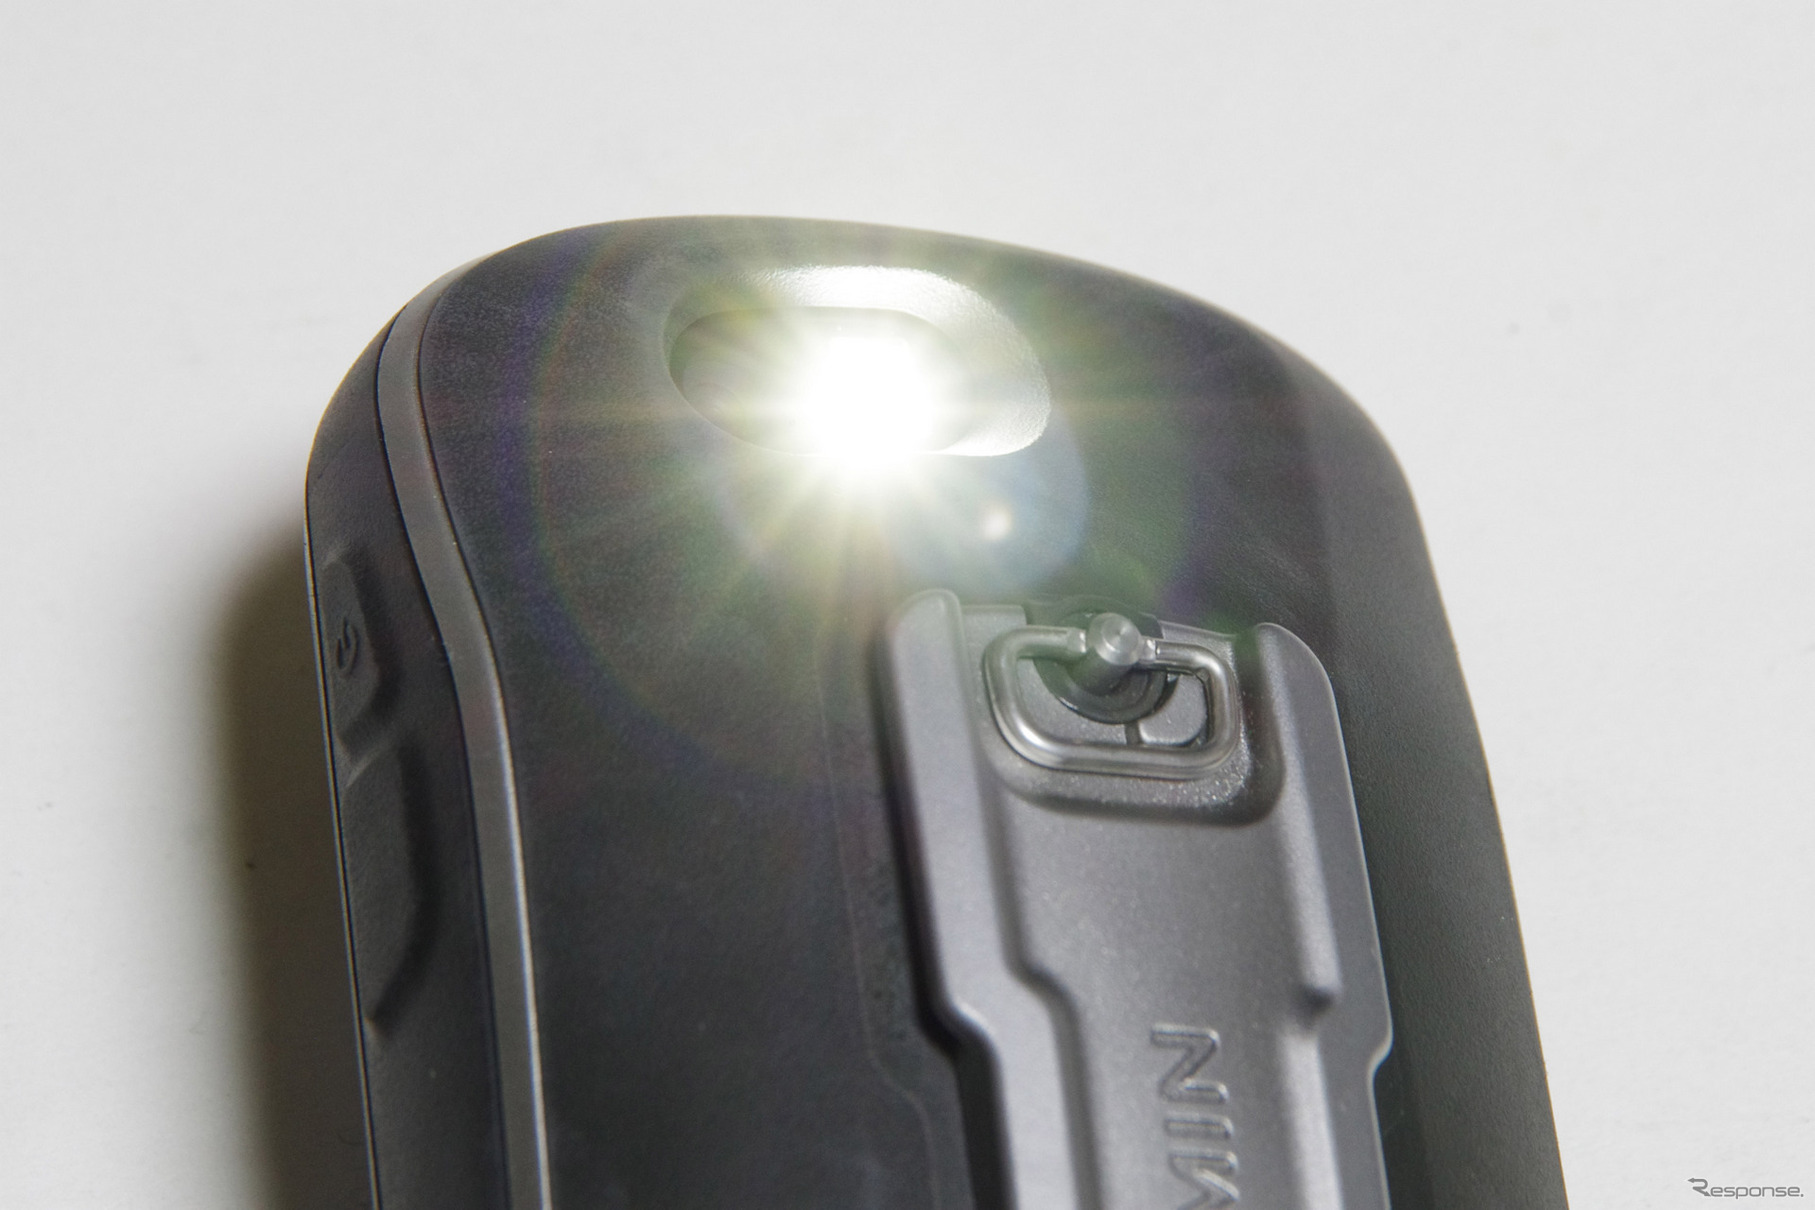 LEDは写真撮影時のフラッシュとして使えるだけでなく、ハンディライトにもなる。SOS信号を点滅させることも可能だ。